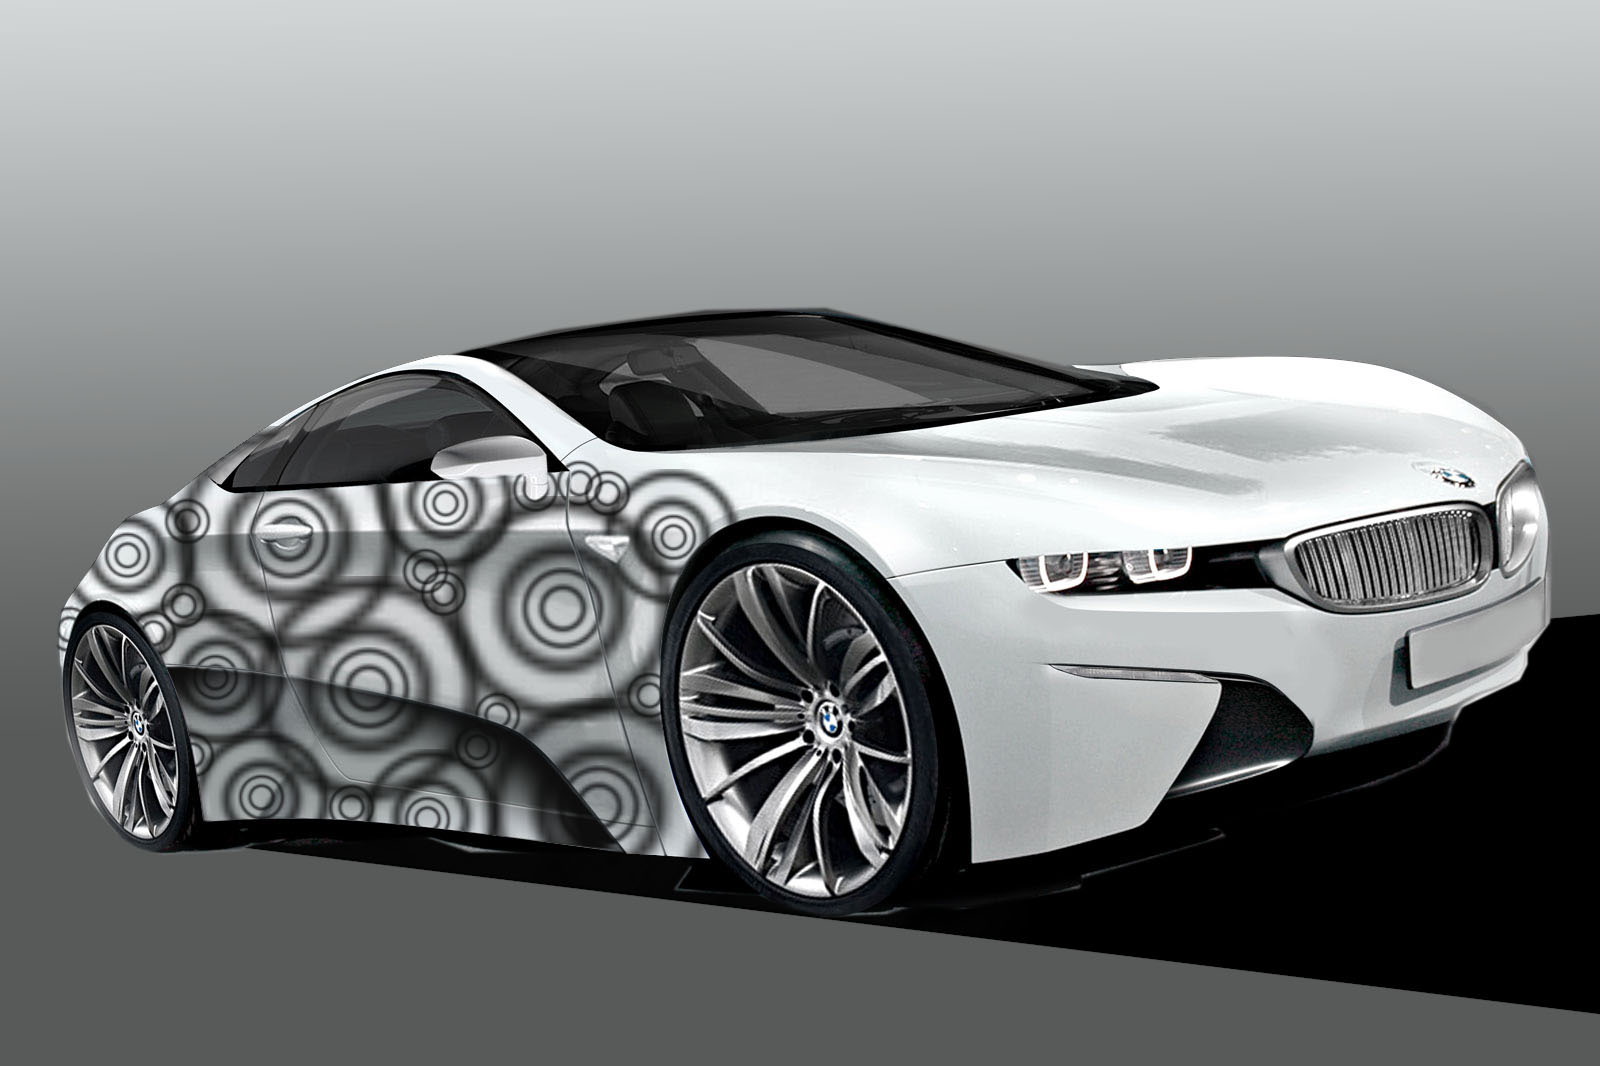 Wallpaper Bmw Concept Car